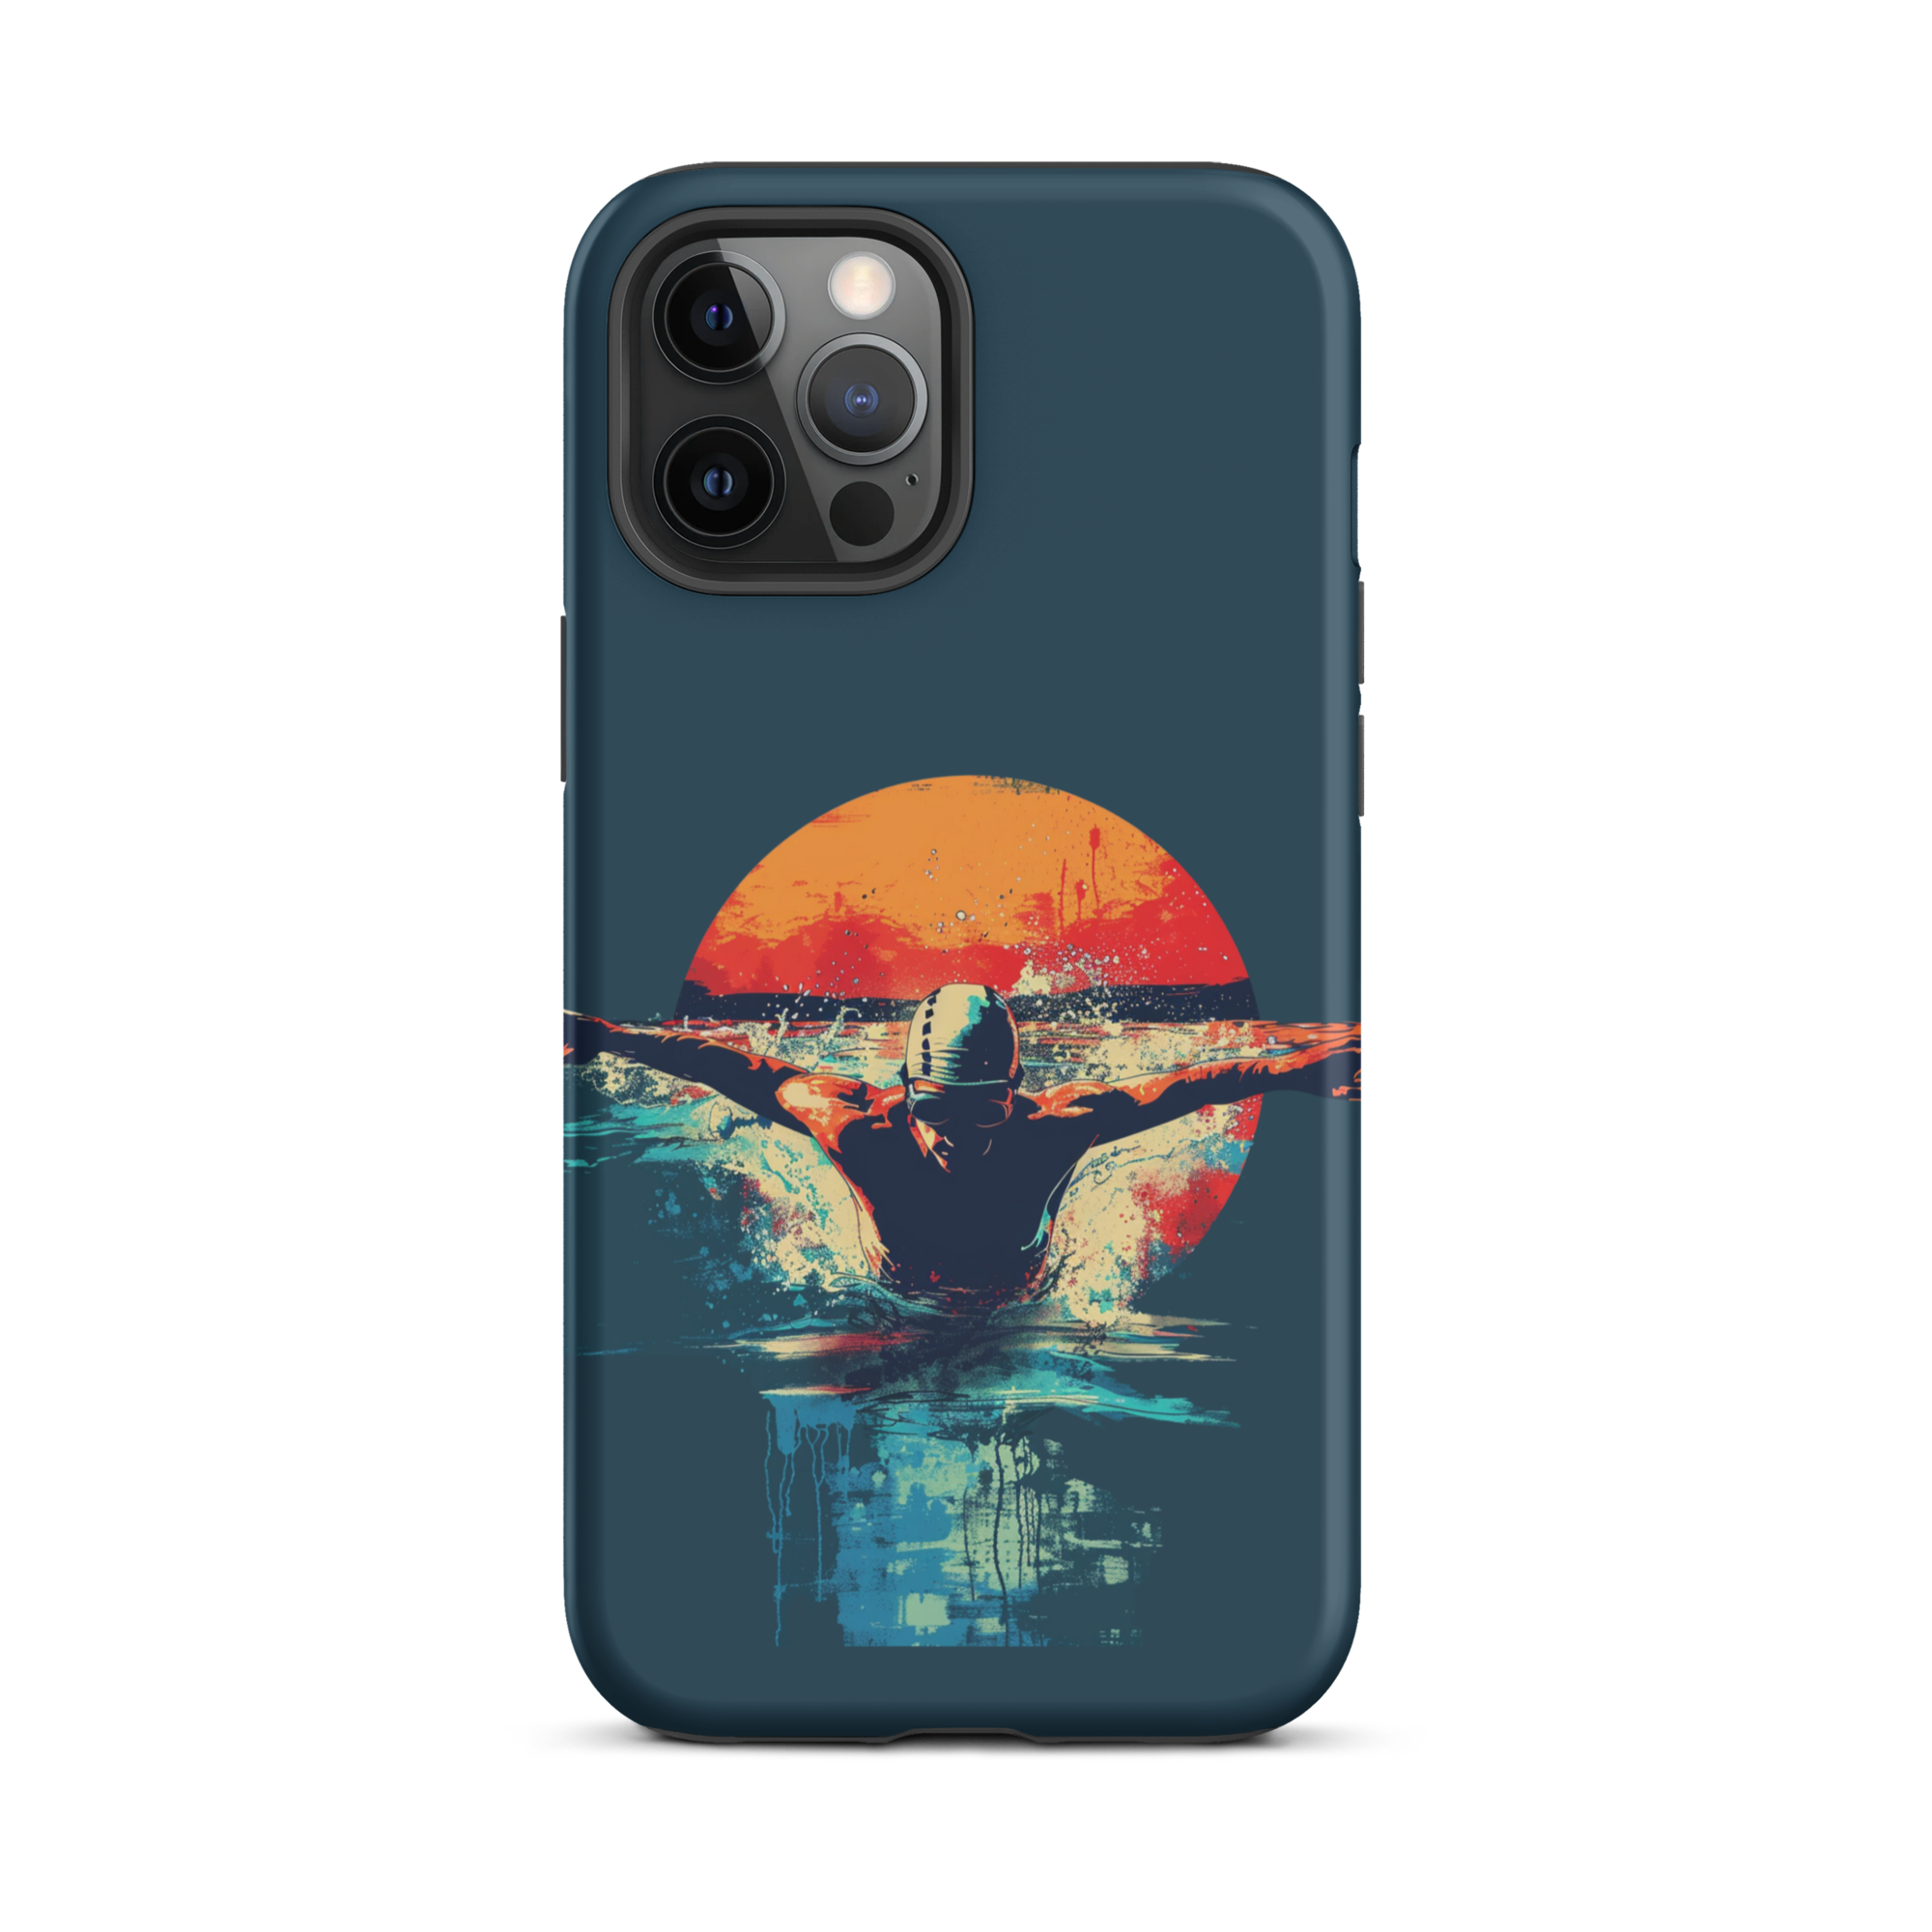 Aquatic Cosmos iPhone Case